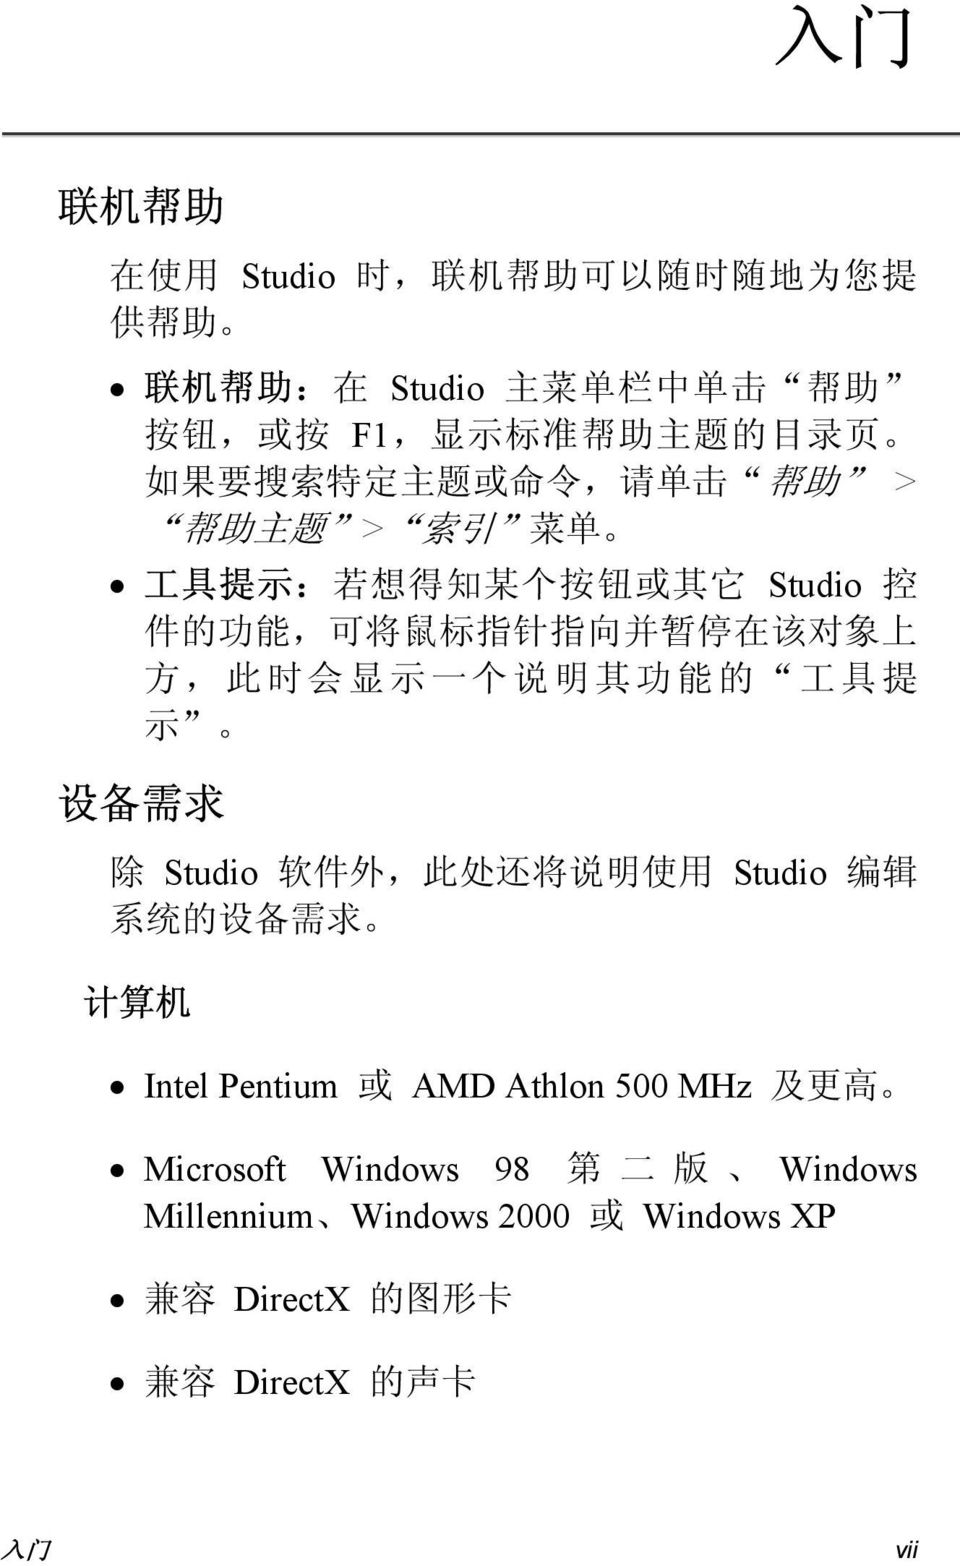 上 方, 此 时 会 显 示 一 个 说 明 其 功 能 的 工 具 提 示 设 备 需 求 除 Studio 软 件 外, 此 处 还 将 说 明 使 用 Studio 编 辑 系 统 的 设 备 需 求 计 算 机 Intel Pentium 或 AMD